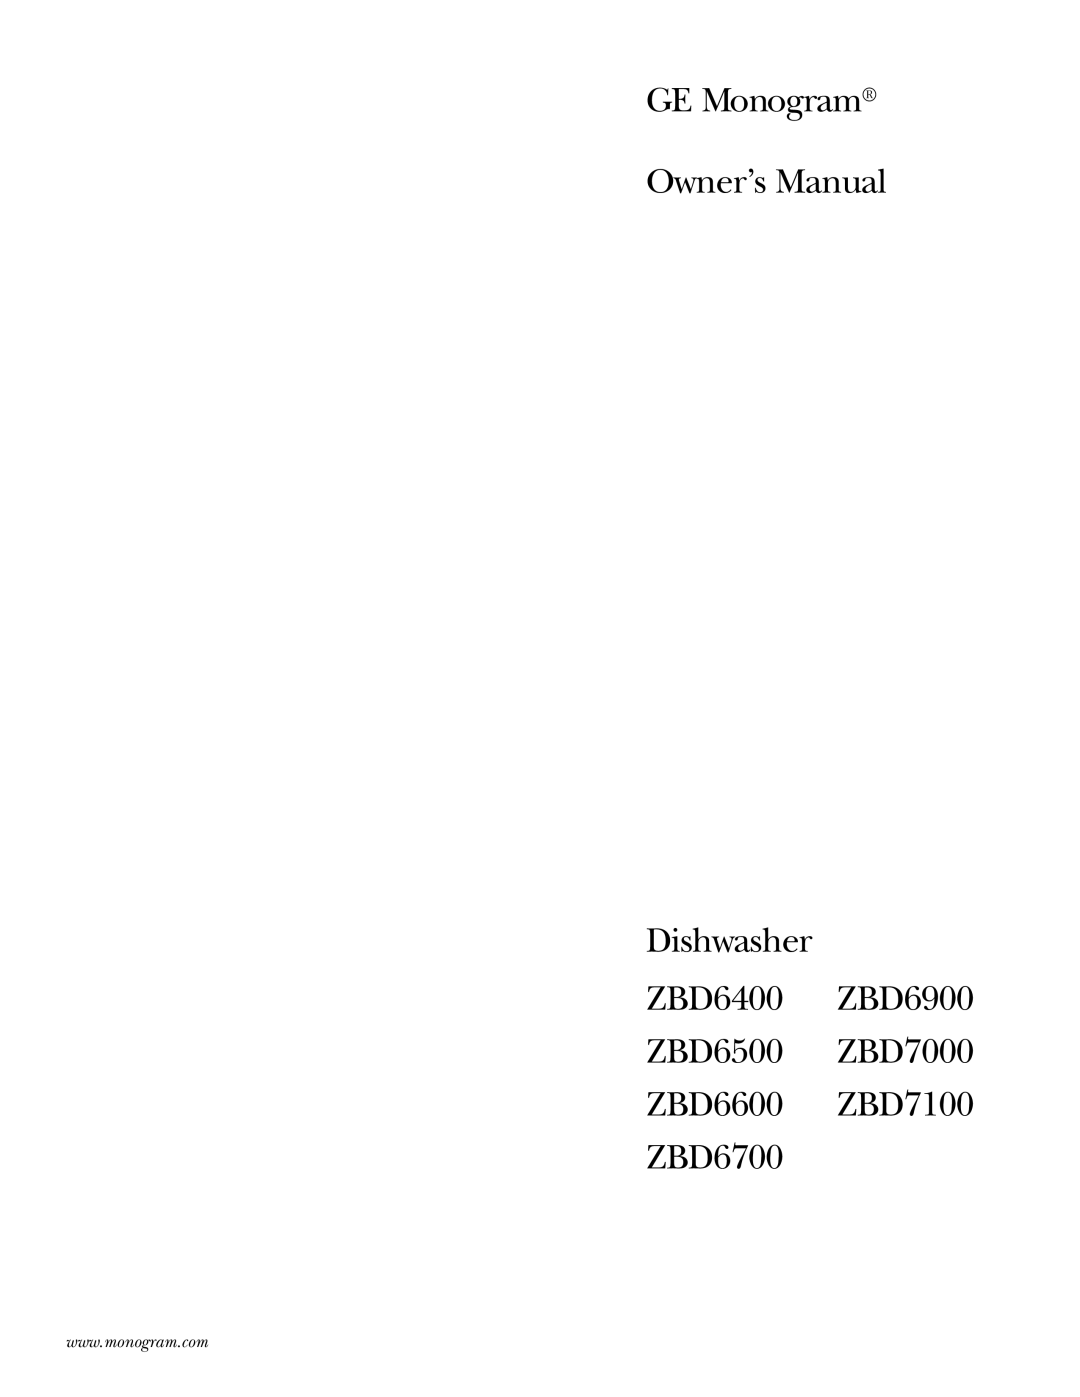 GE owner manual GE Monogram Owner’s Manual Dishwasher, ZBD6400 ZBD6900 ZBD6500 ZBD7000 ZBD6600 ZBD7100 ZBD6700 